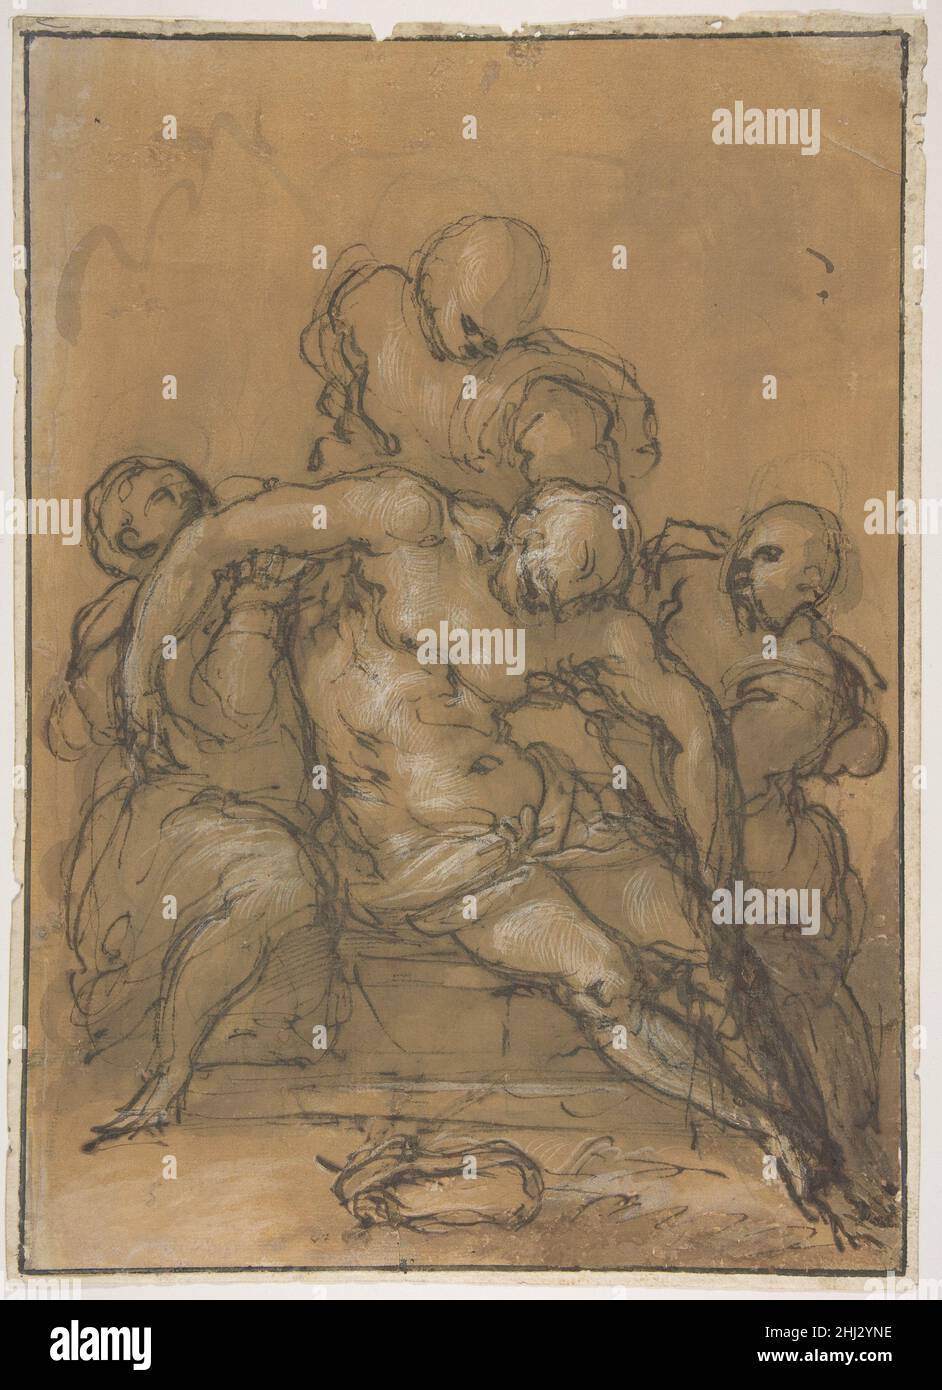 Der tote Christus mit drei Figuren 1537–91 Giovanni Battista Naldini der Italiener Naldini scheint ein Gespür dafür zu haben, Figuren in wunderschön choreografierten Kompositionen zusammenzuführen, von denen er viele zur Verschönerung von Kirchen in Florenz und Rom entwarf. Seine starken, aber dennoch sanften Zeichnungen spiegeln die Einflüsse von Michelangelo, Pontormo und Andrea del Sarto wider. Naldini trainierte von 1549 bis 1556 in der Werkstatt von Pontormo. Die Auswirkungen dieser prägenden Erfahrung zeigen sich in seiner Zeichenweise mit kräftigen kritzelnden Konturen sowie in einer ordentlich volumetrischen Konzeption von Form und clos Stockfoto